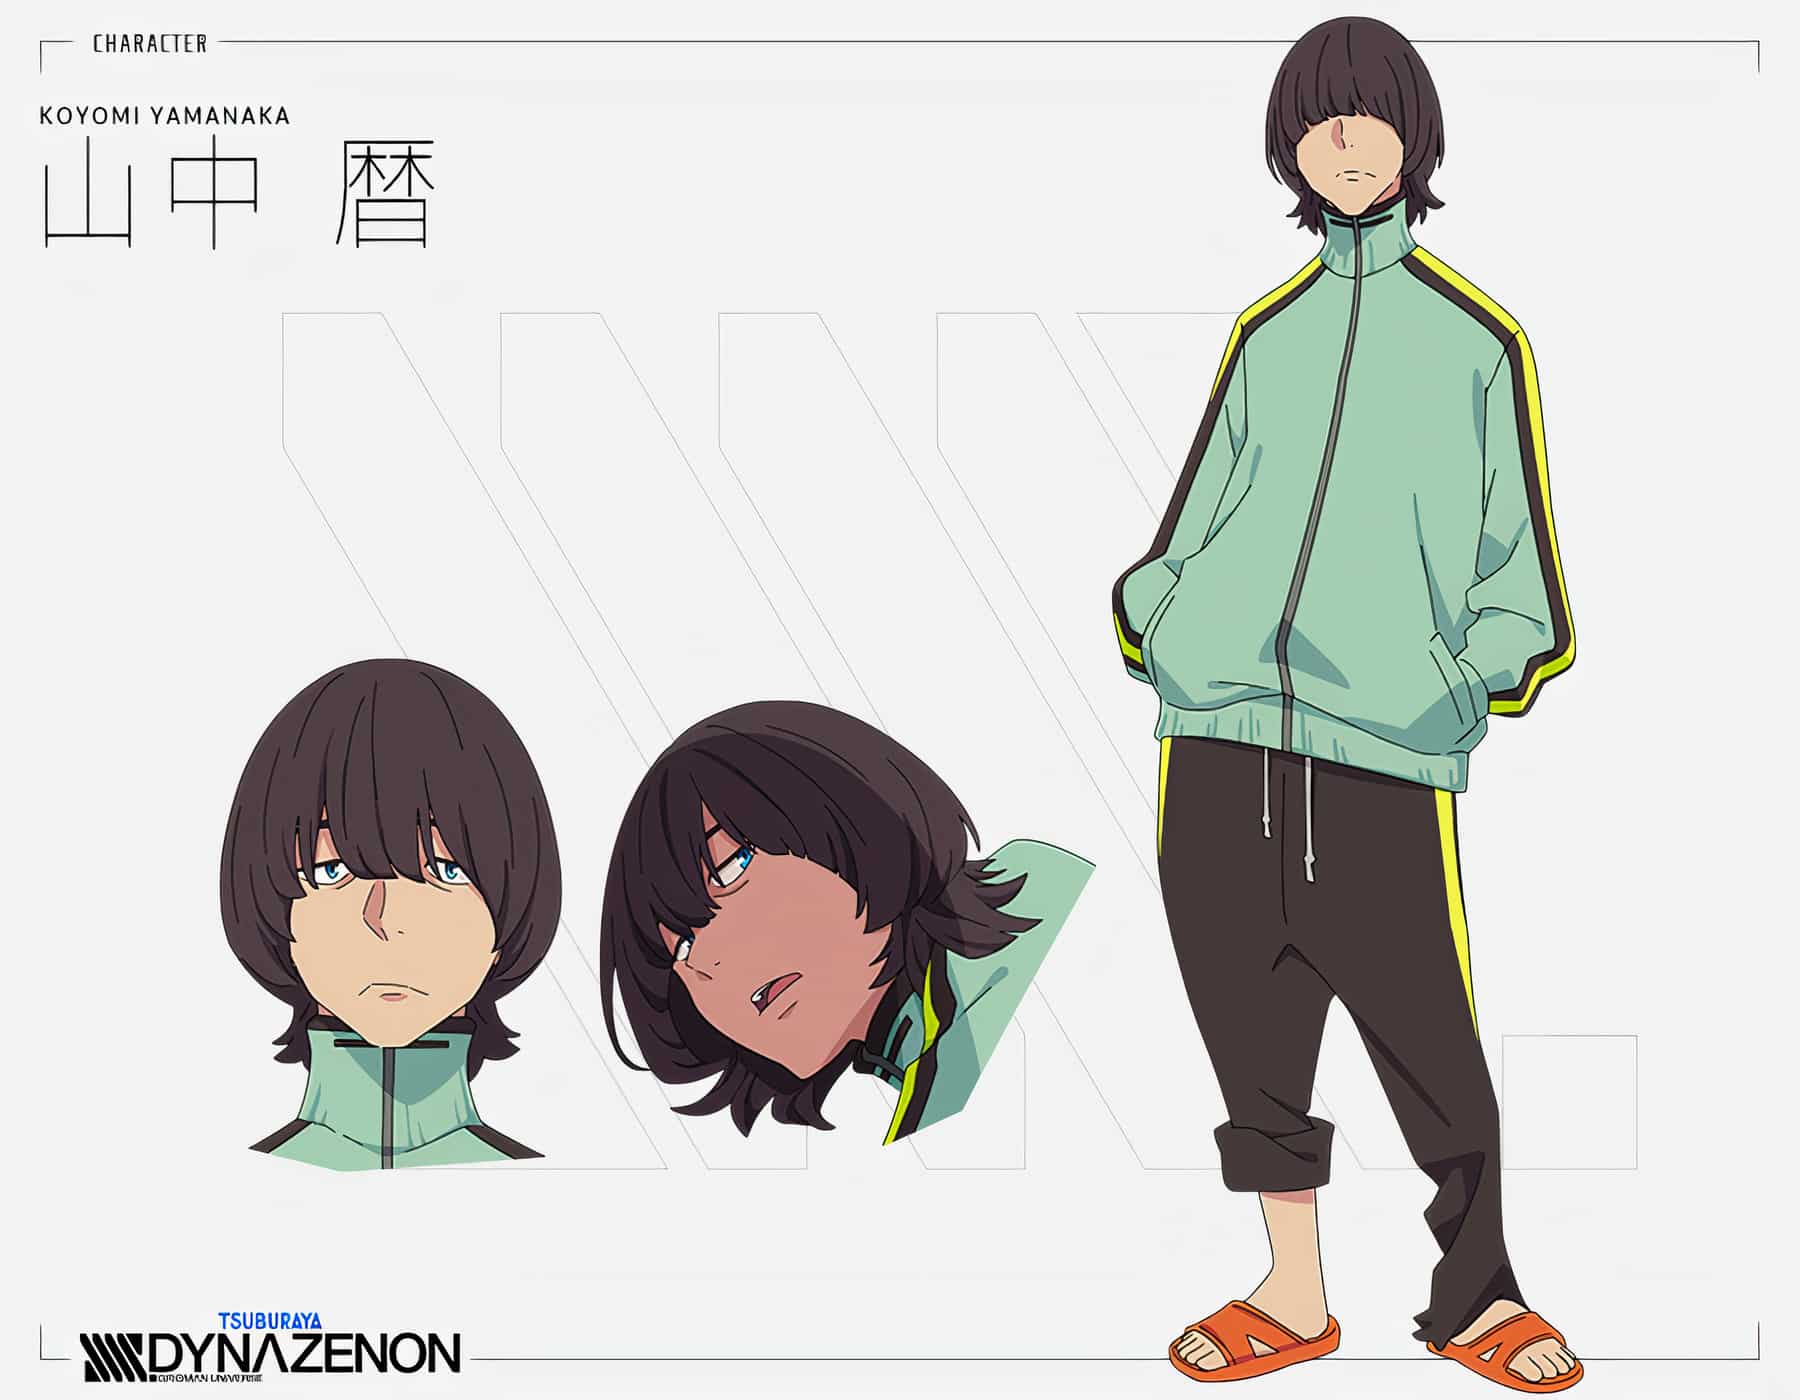 Chara Design de Koyomi Yamanaka, l'un des personnages principaux de l'anime SSSS.DYNAZENON